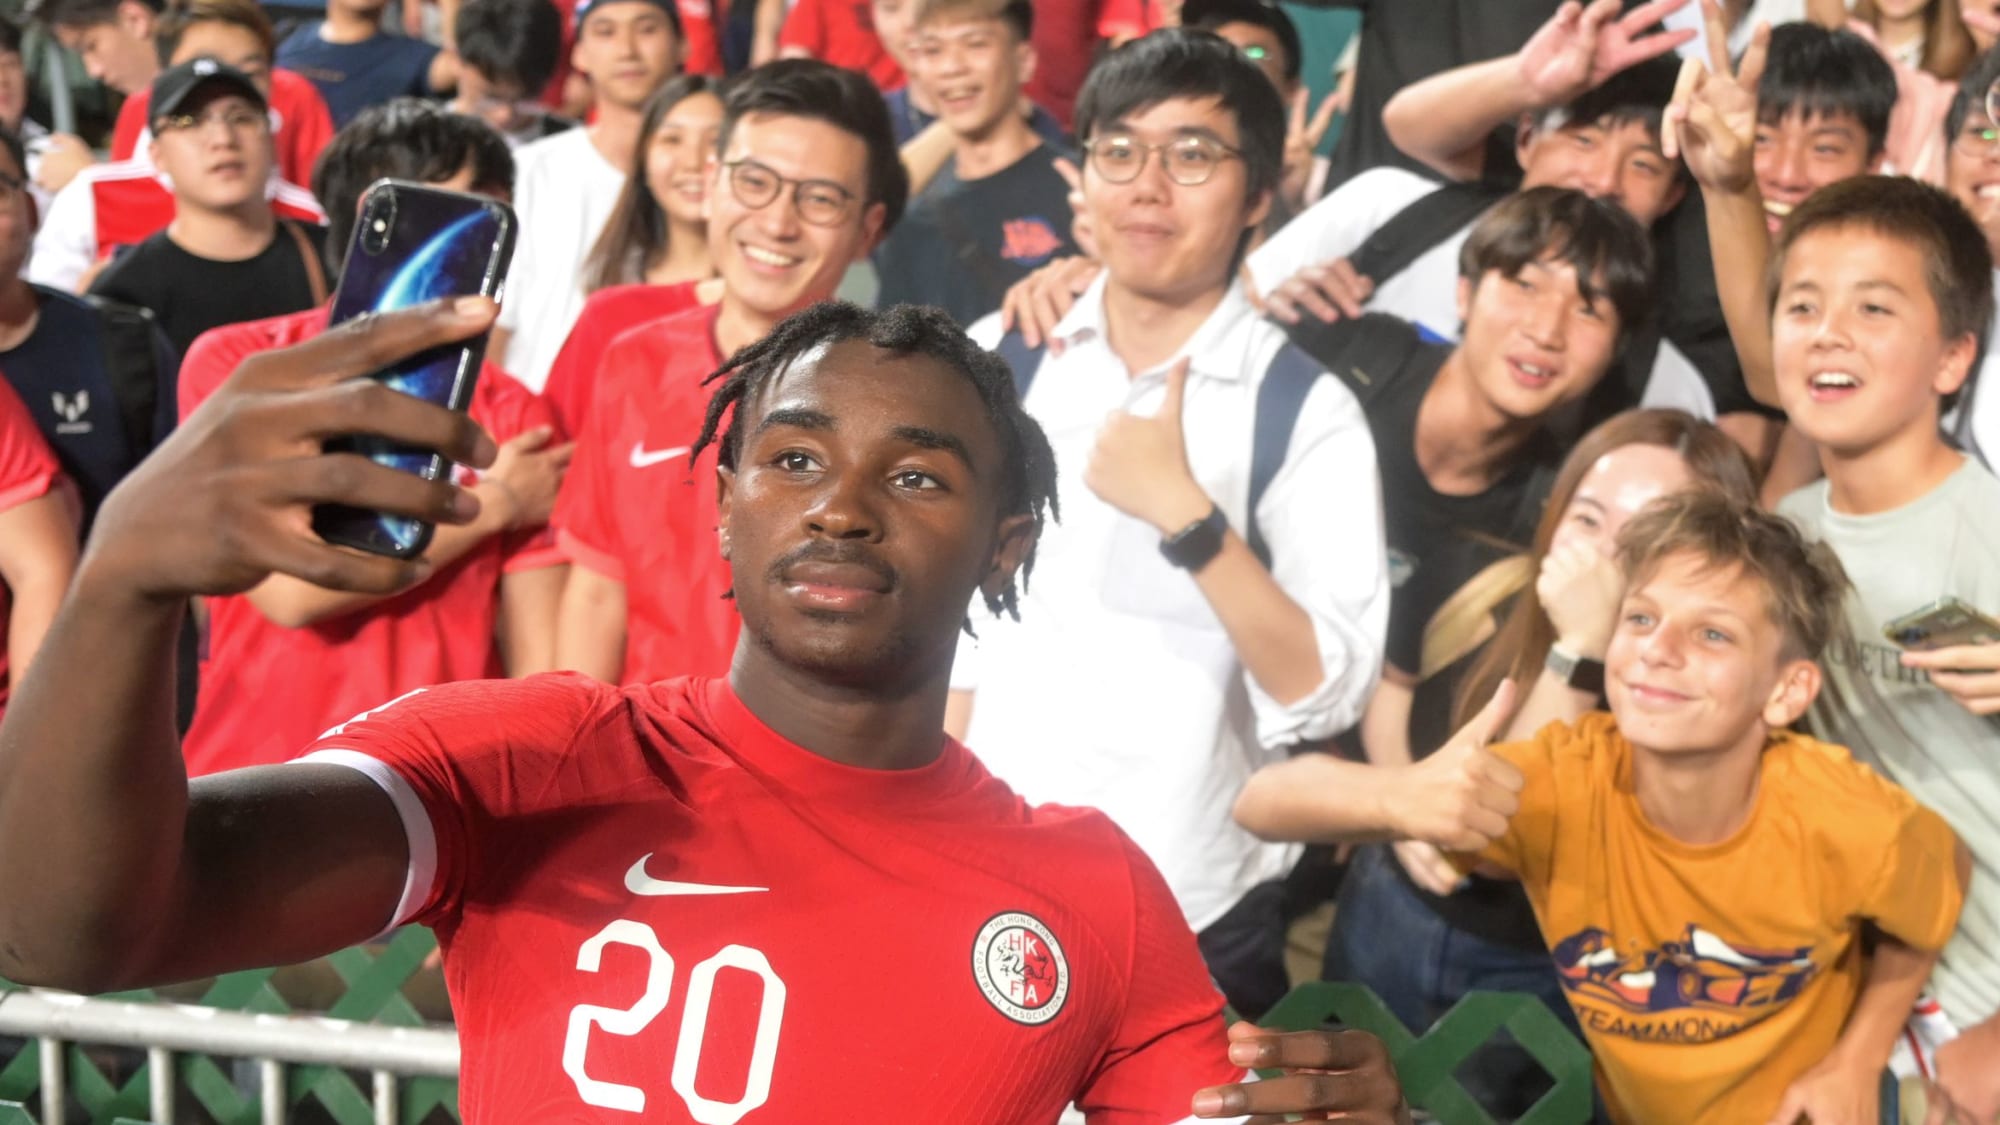 Michael Udebuluzor feiert im Trikot von Hongkongs Nationalmannschaft mit den Fans und macht ein Handy-Selfie.